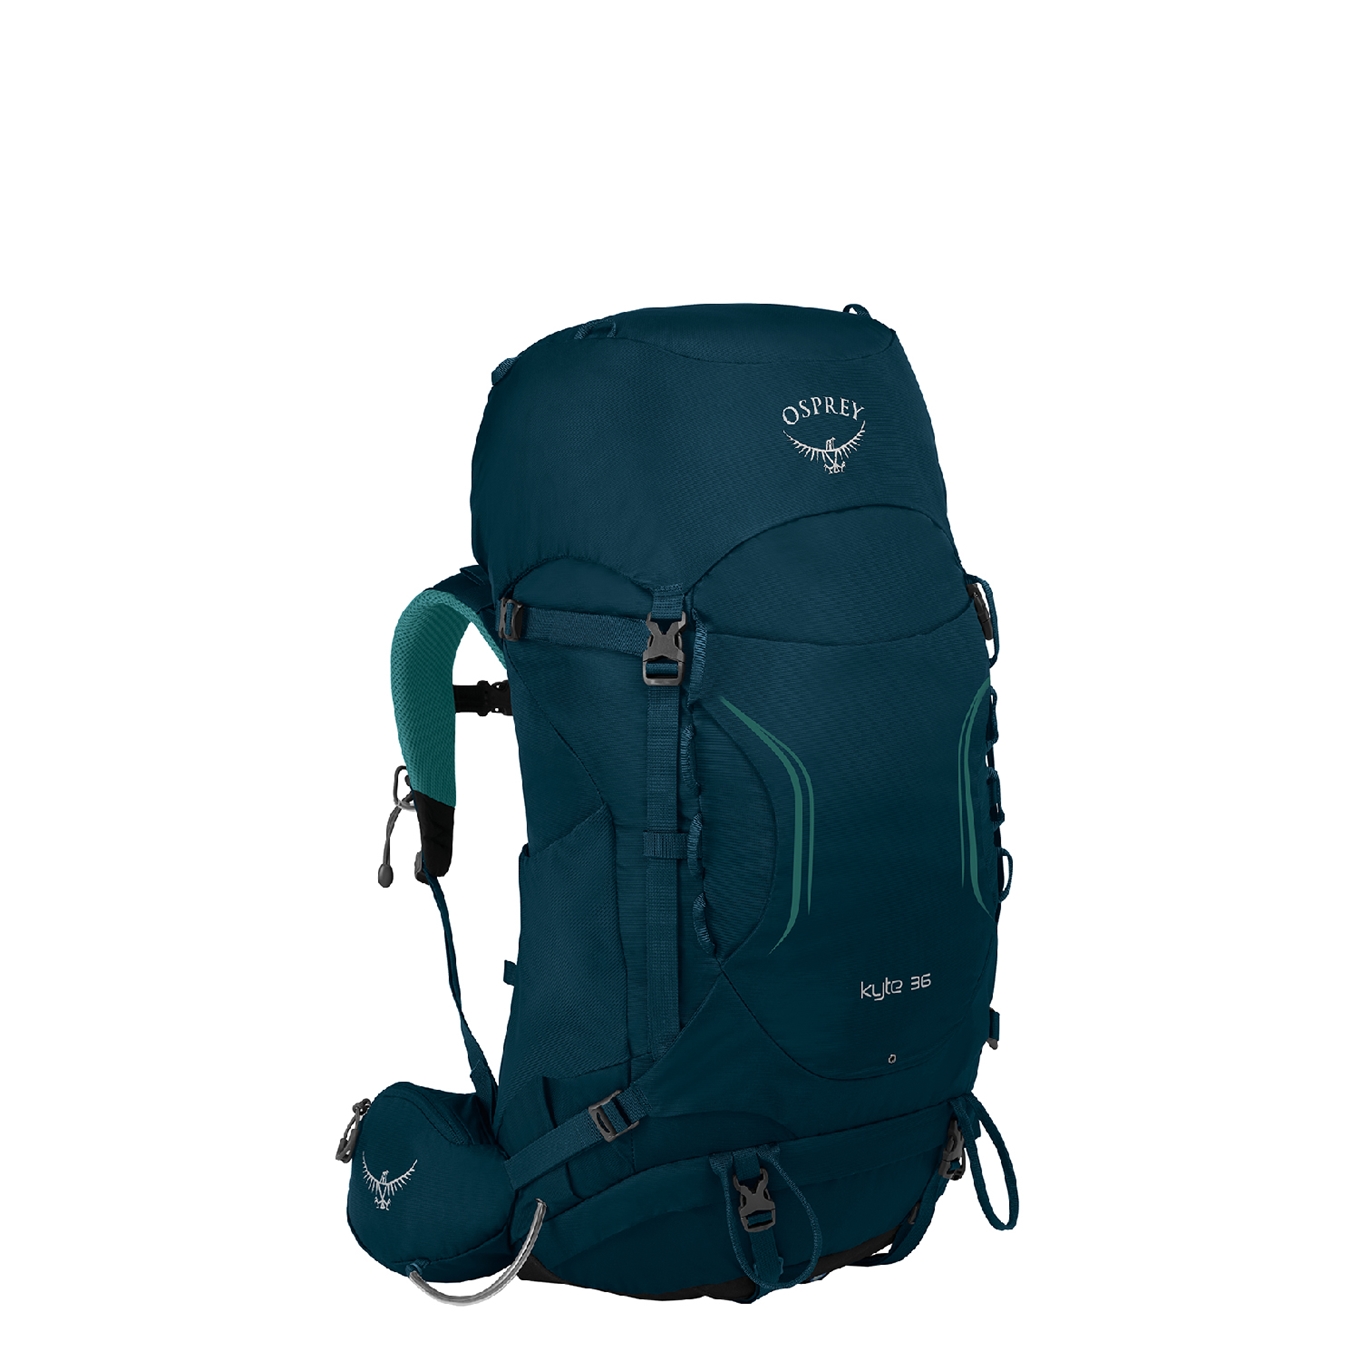 Osprey Kyte 36 Women&apos;s Backpack S/M icelake green backpack